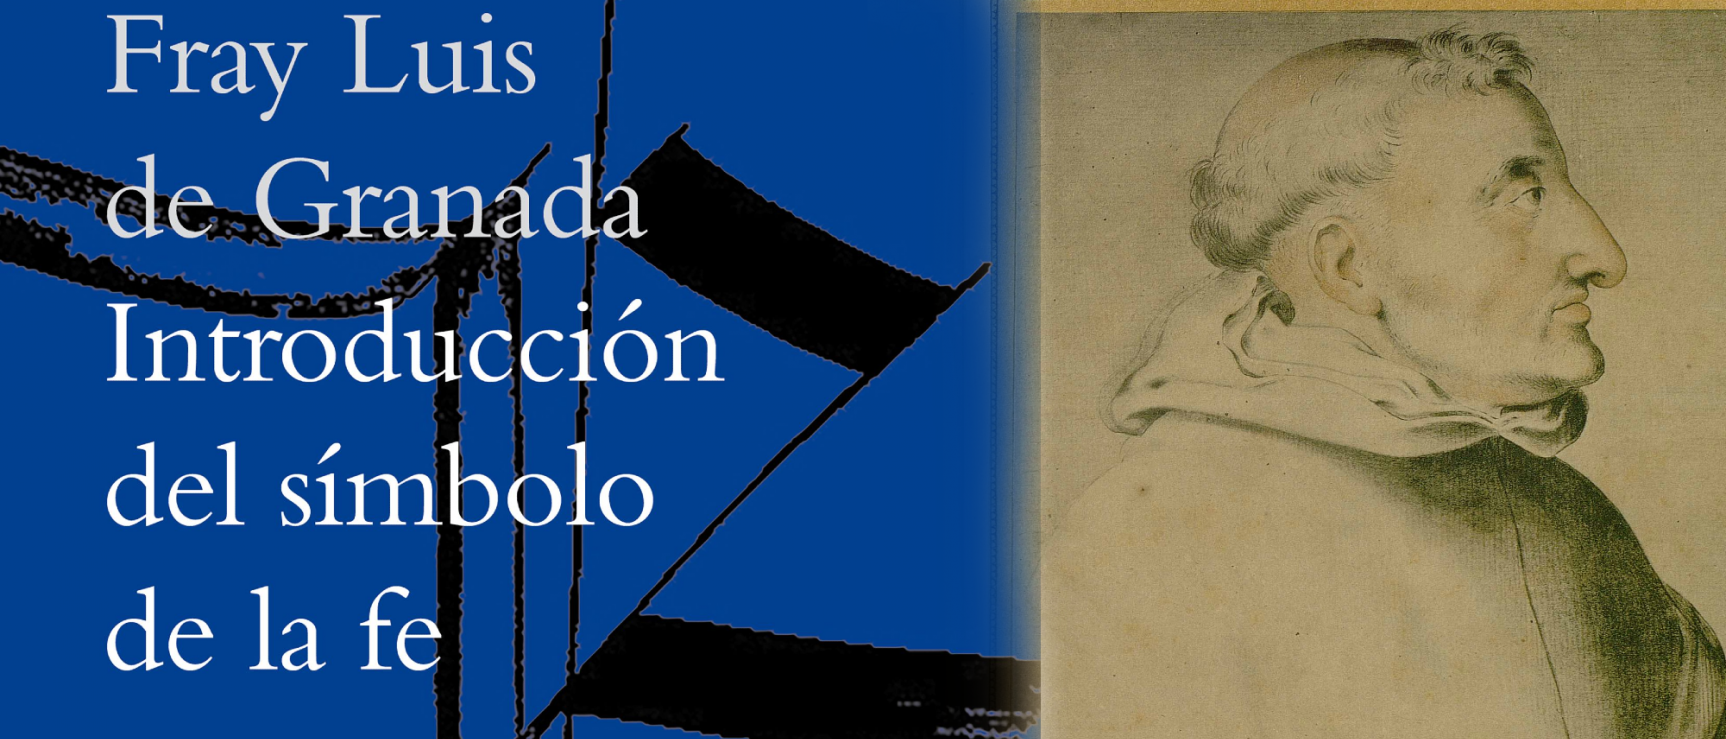 Introducción del símbolo de la fe, de fray Luis de Granada